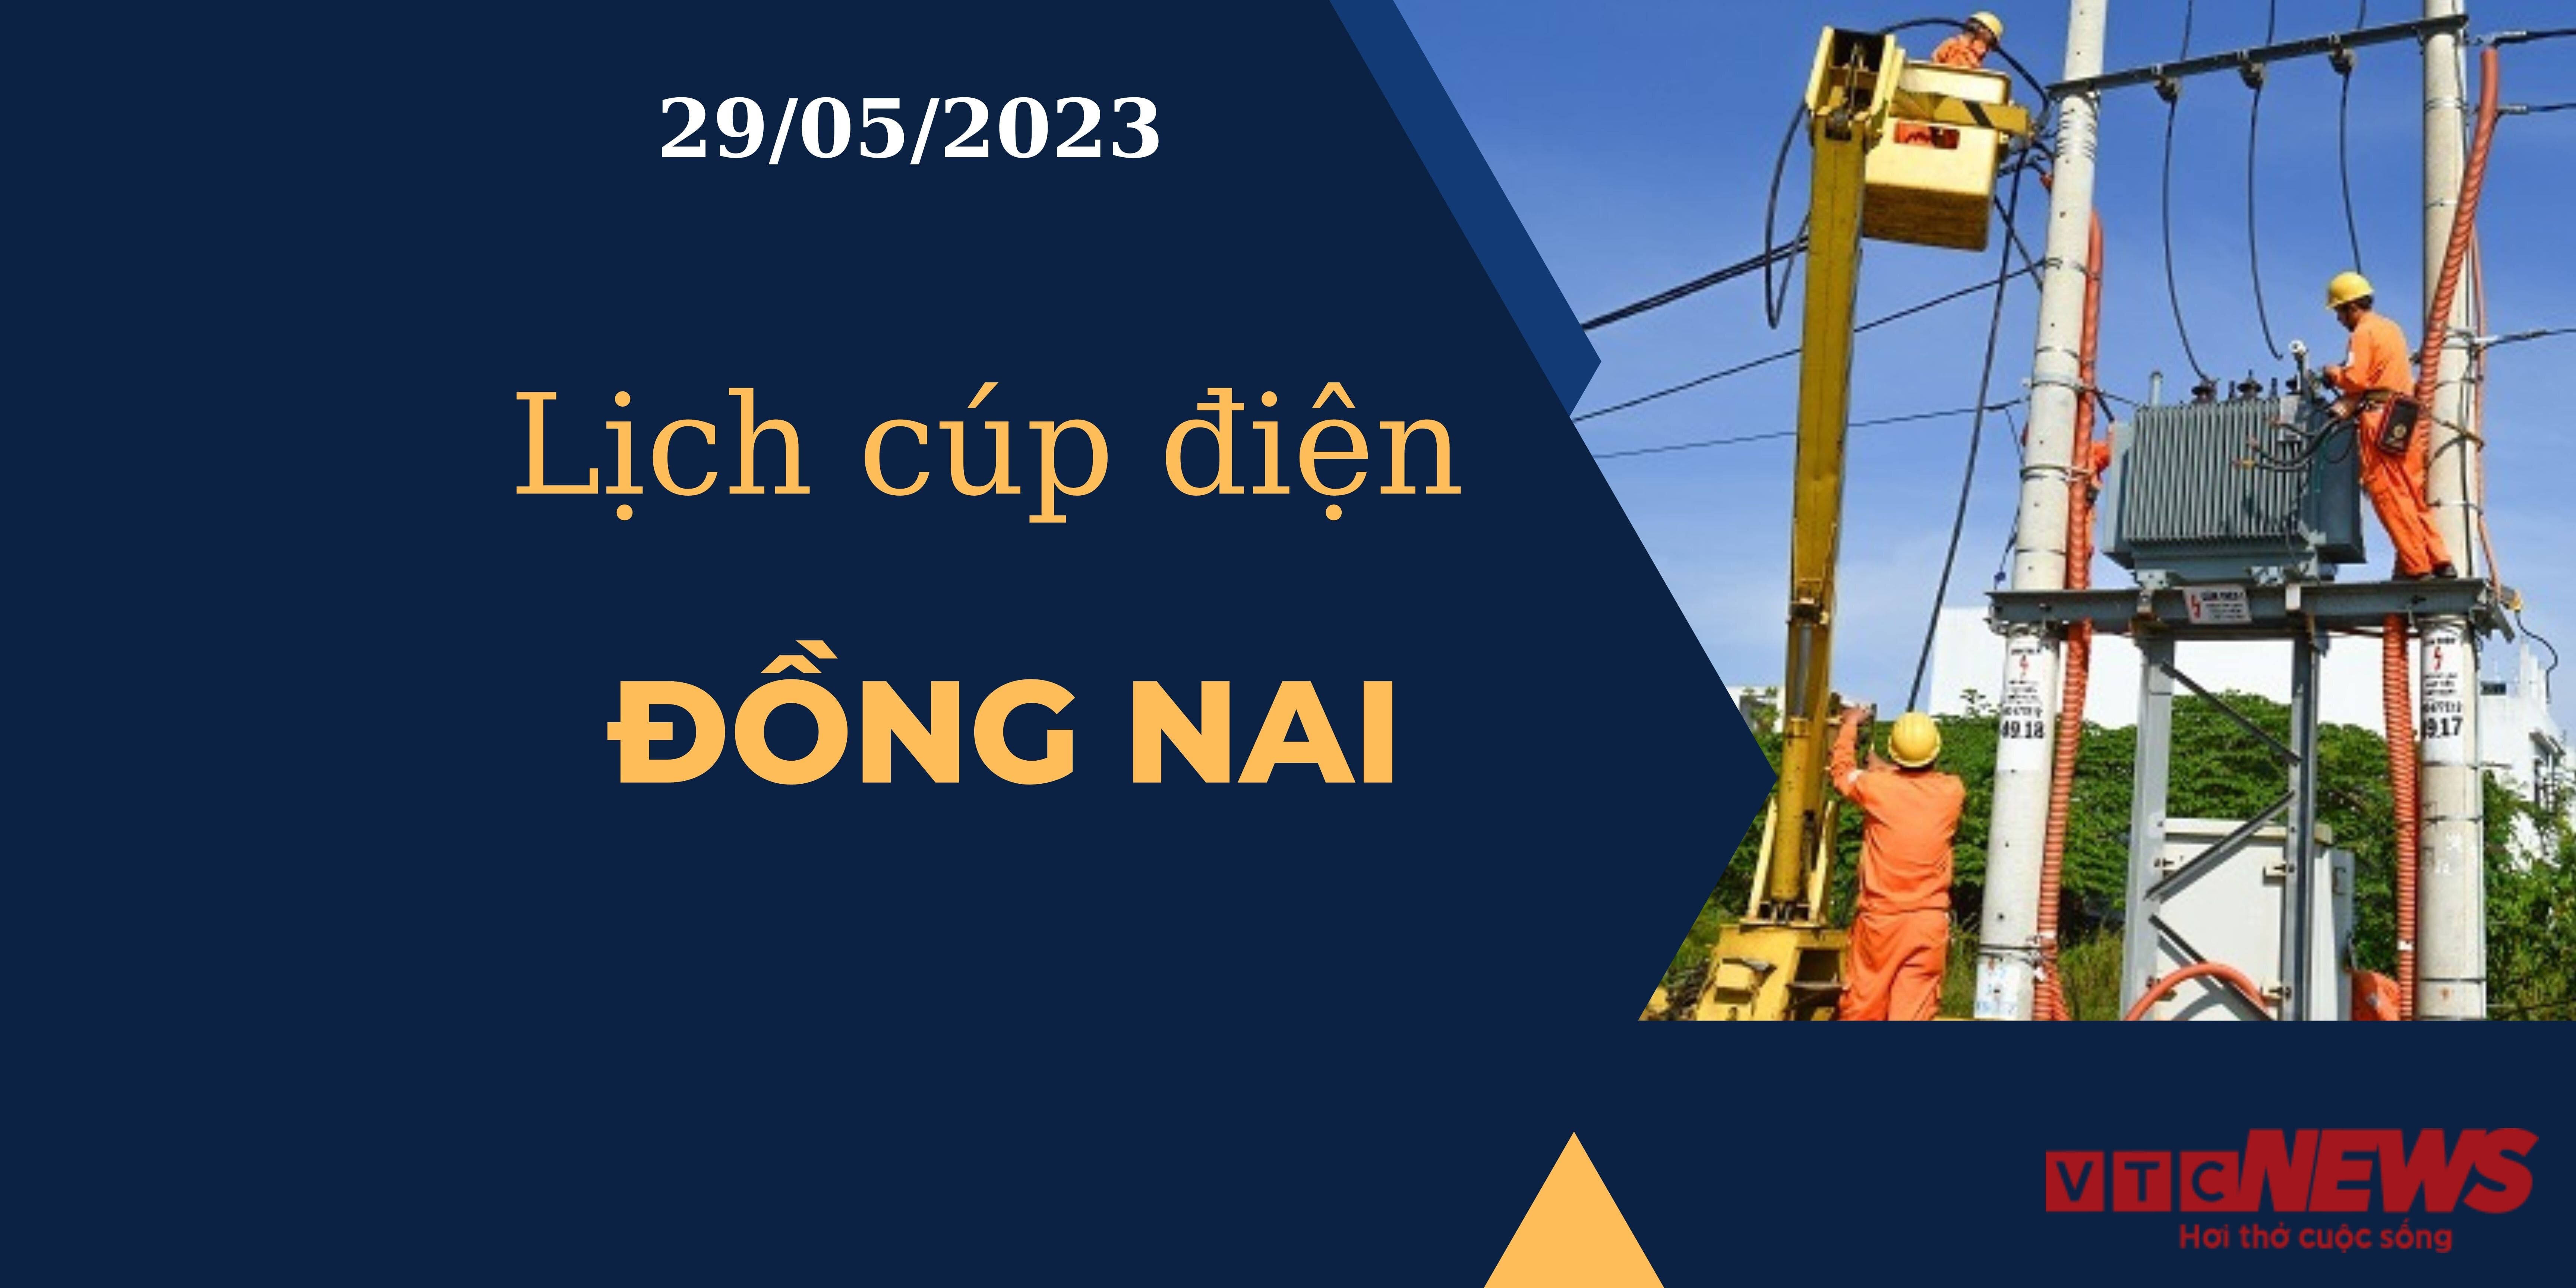 Lịch cúp điện hôm nay ngày 29/05/2023 tại Đồng Nai - 1